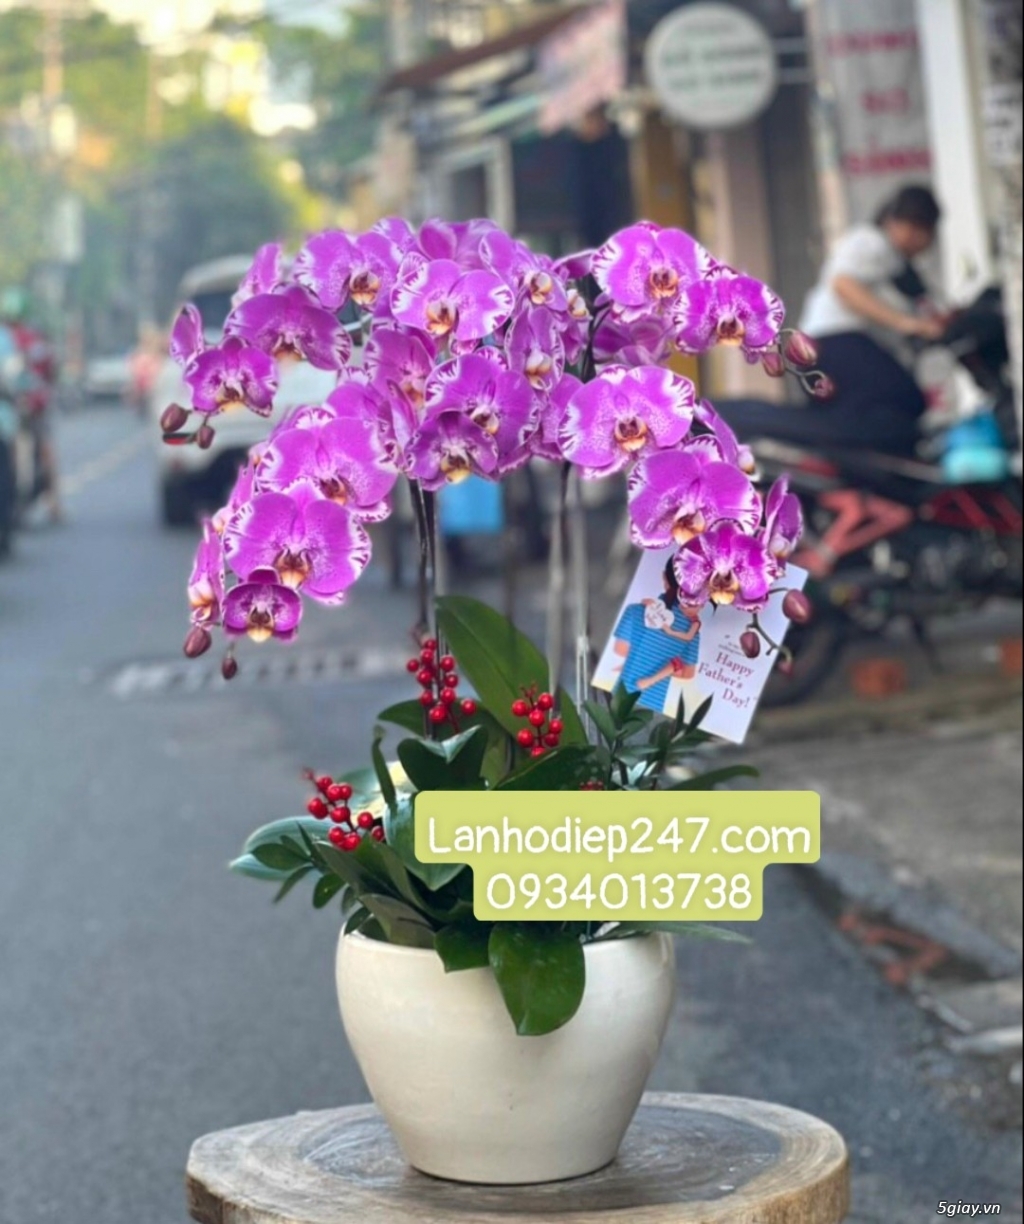 Shop Lan Hồ Điệp Cao Cấp tại Sài Gòn - Hoa Tươi 247 TPHCM 0934013738 - 4